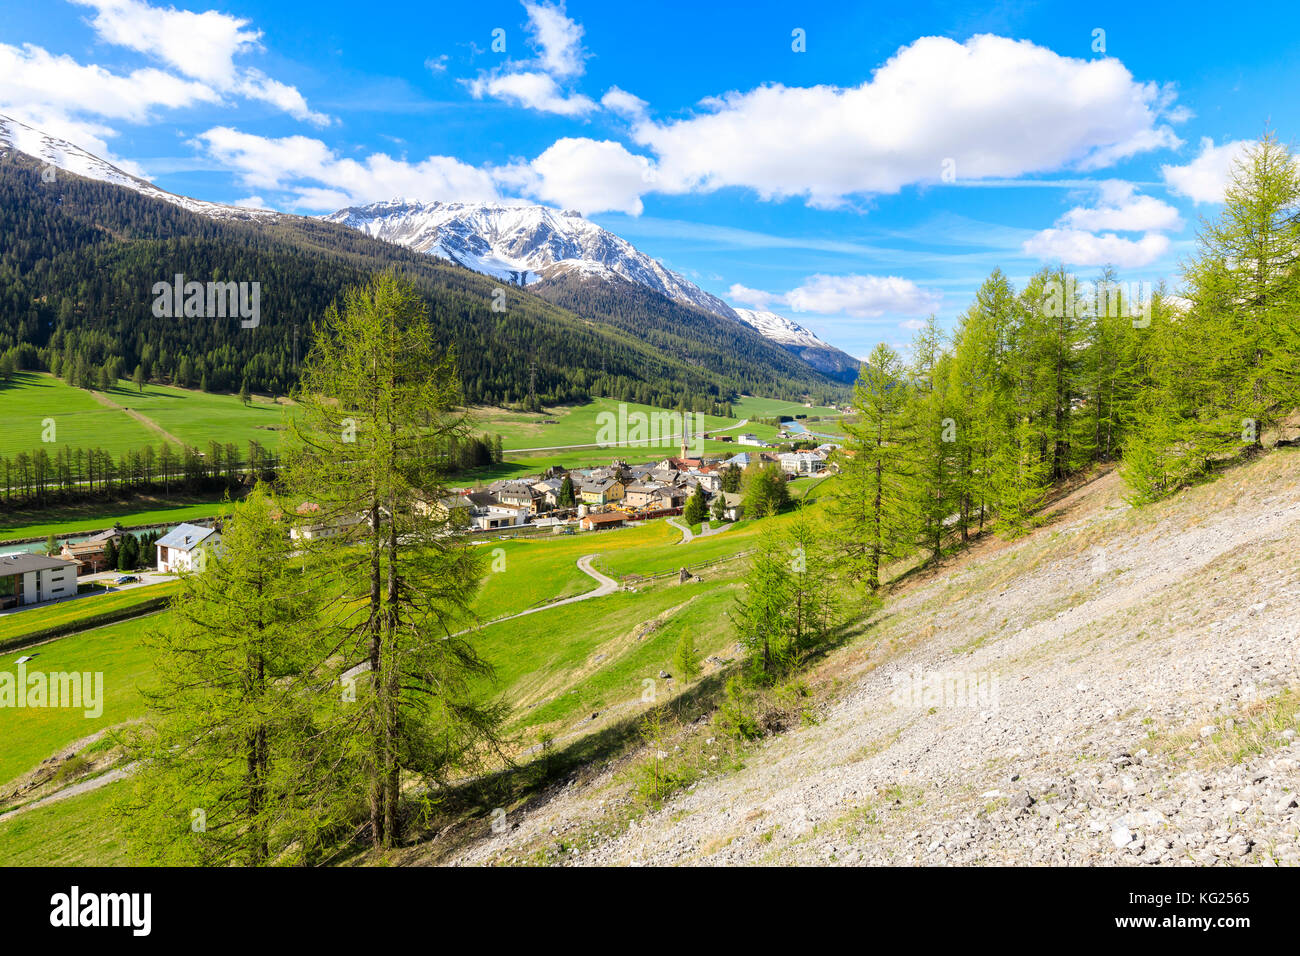 Village alpin de s-chanf entouré de vertes prairies au printemps, canton des Grisons maloja, Région, Suisse, Europe Banque D'Images